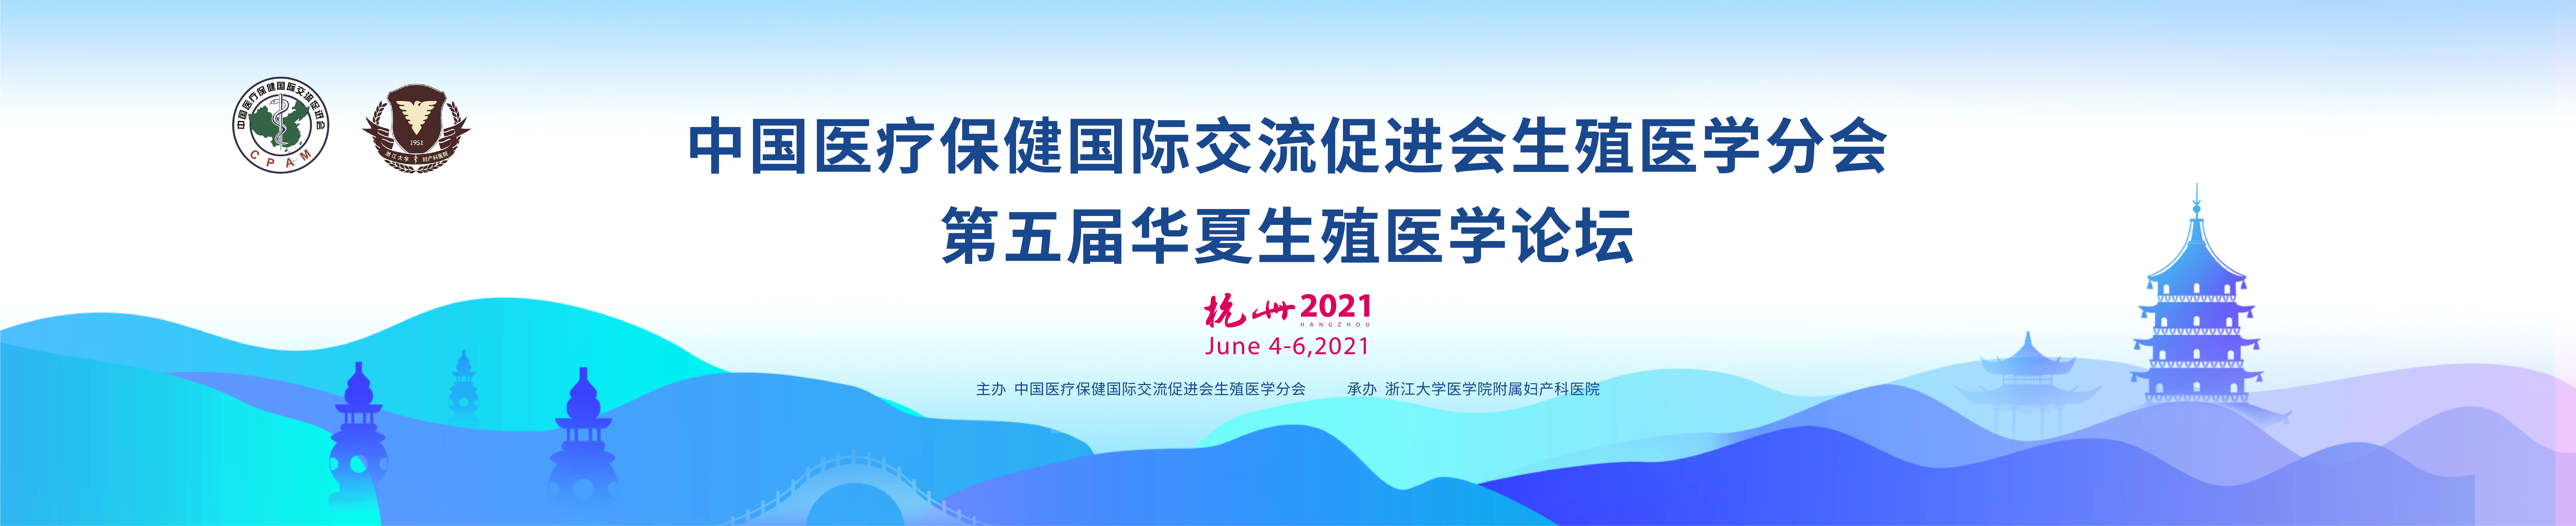 中国医疗保健国际交流促进会生殖医学分会2021年会第五届华夏生殖医学论坛